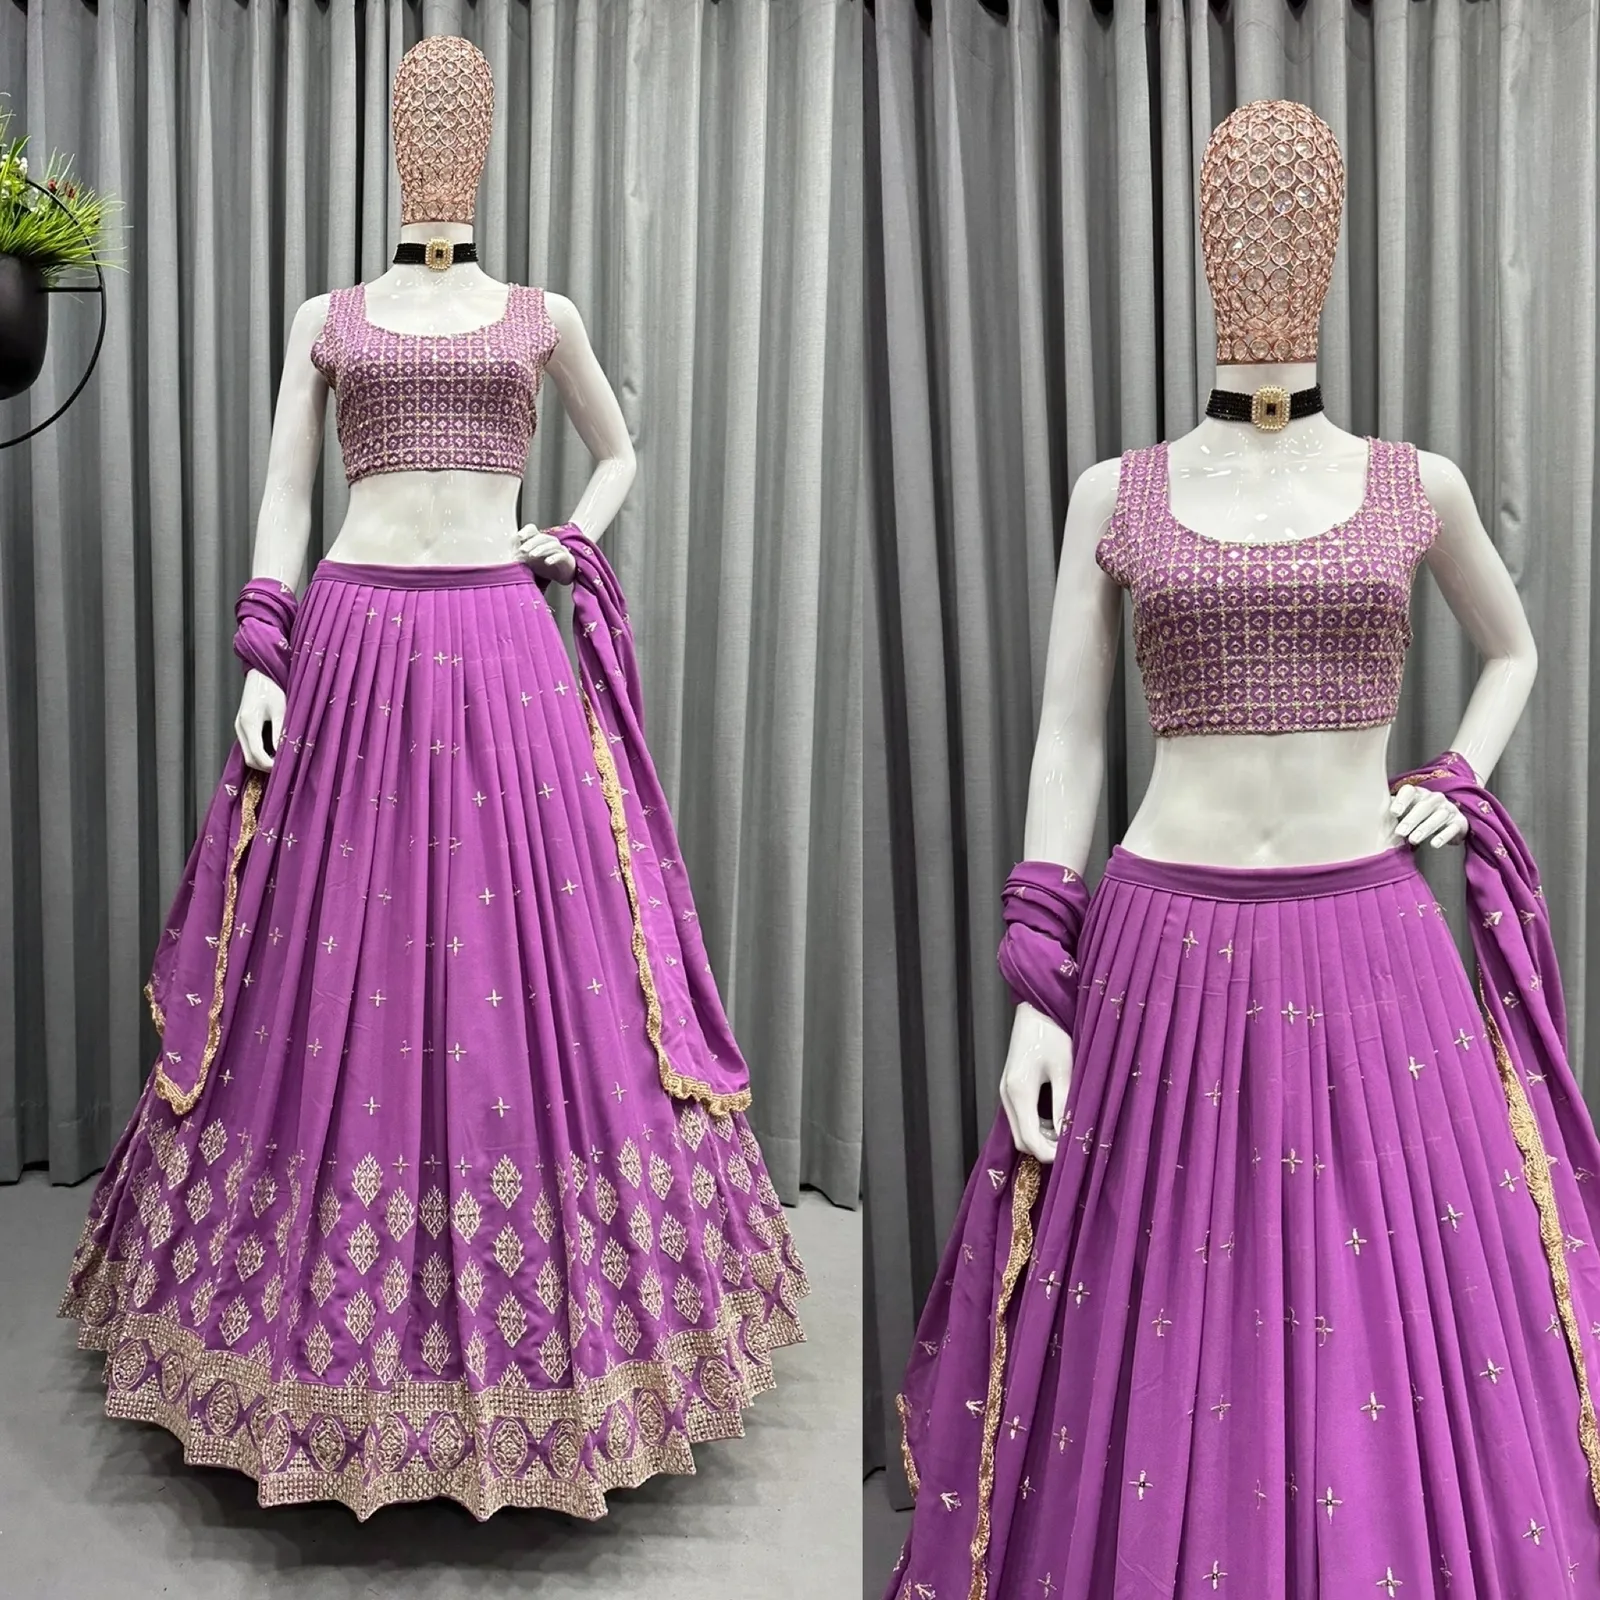 Лучшее качество, индийская этническая одежда, производитель в Индии, ткань LEHENGHA, горжета, внутренняя вышивка